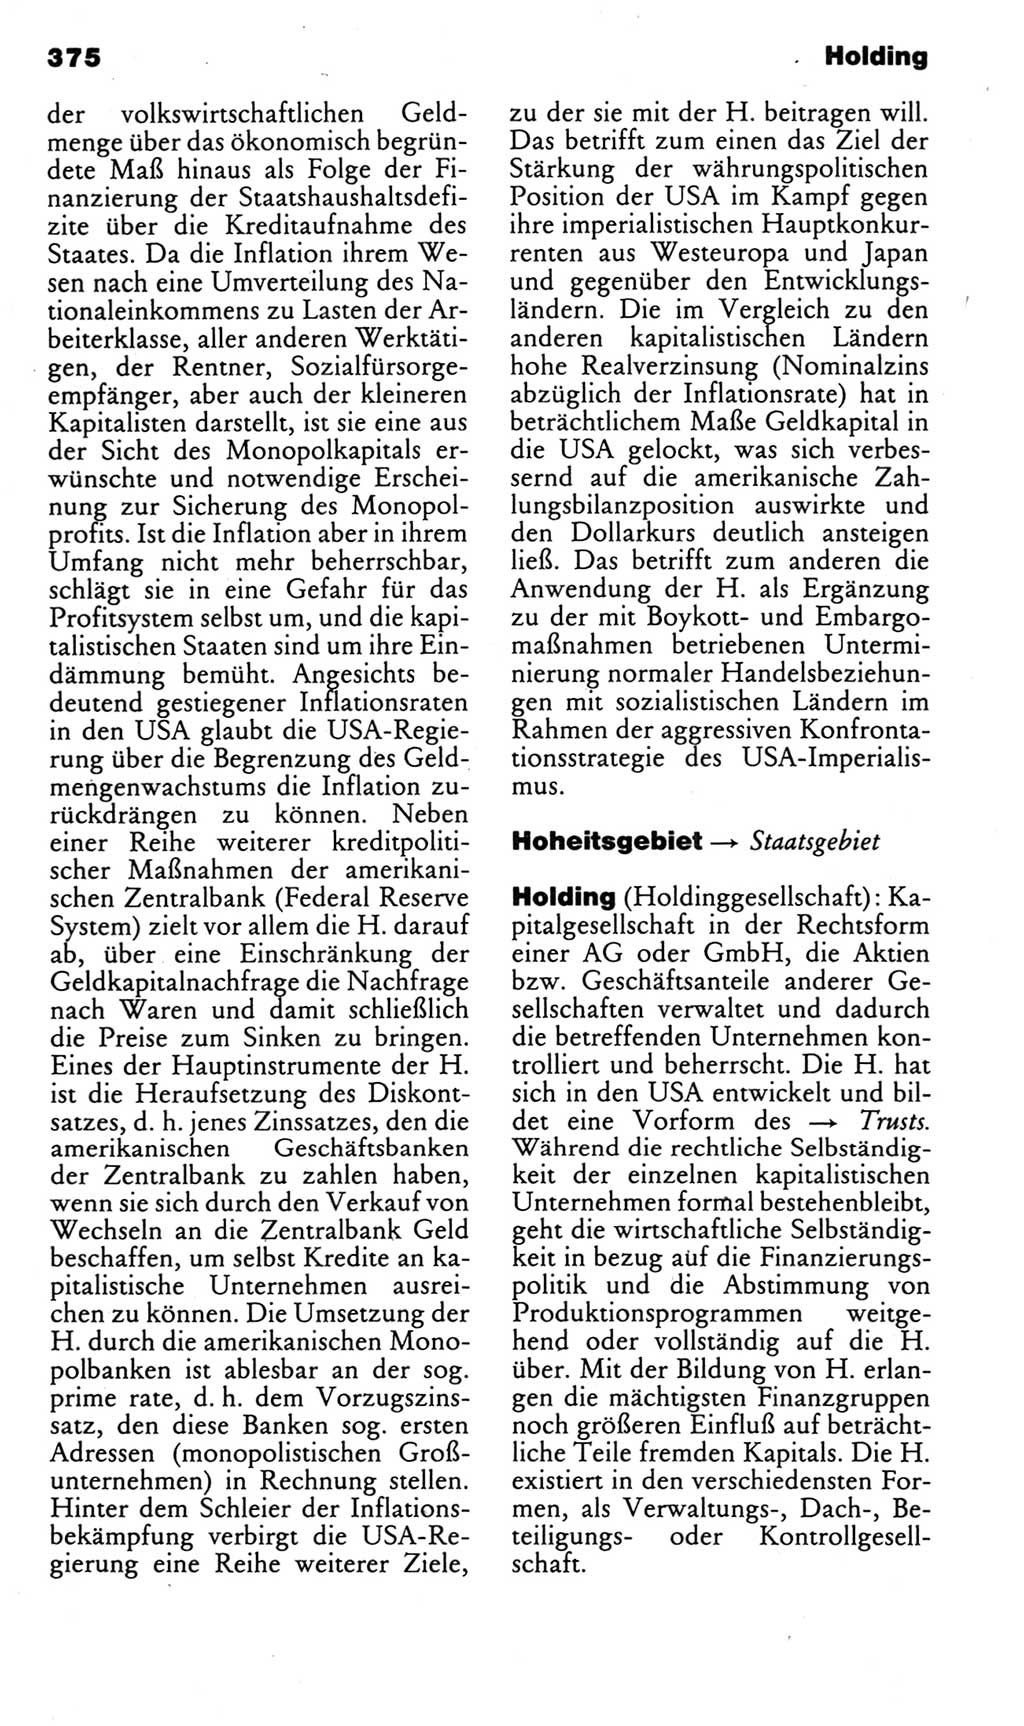 Kleines politisches Wörterbuch [Deutsche Demokratische Republik (DDR)] 1985, Seite 375 (Kl. pol. Wb. DDR 1985, S. 375)